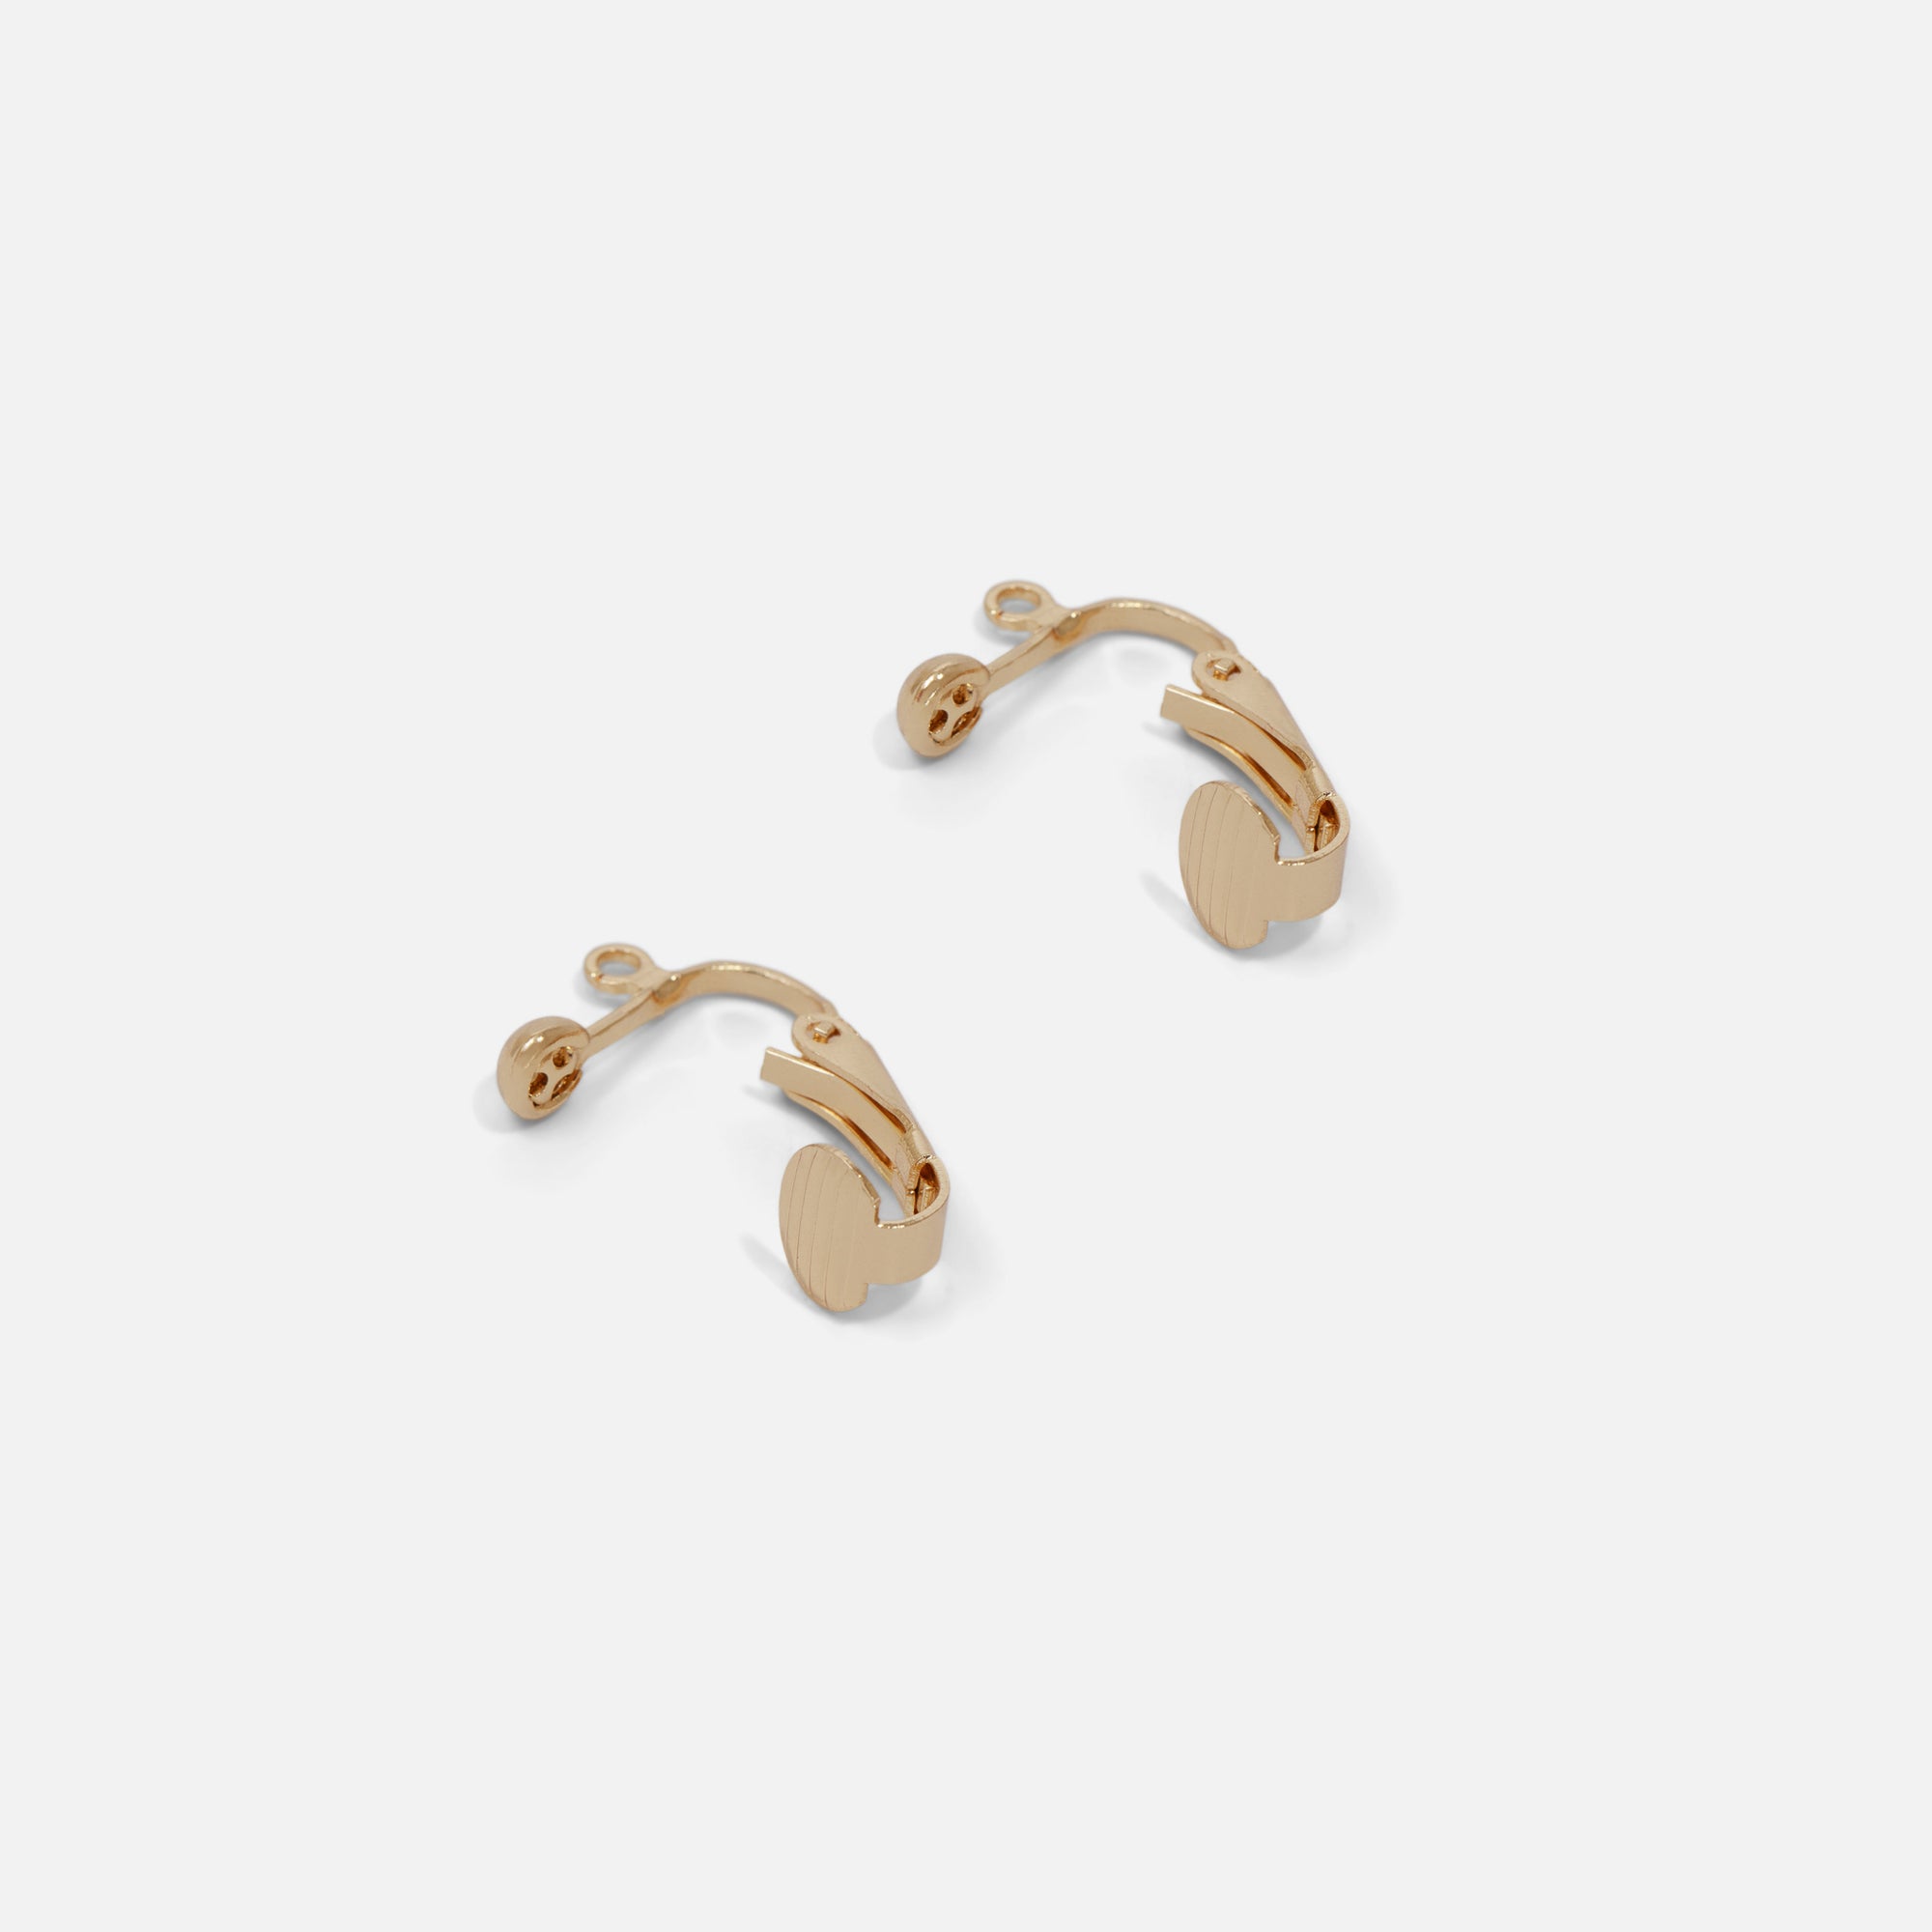 Golden clip for earrings